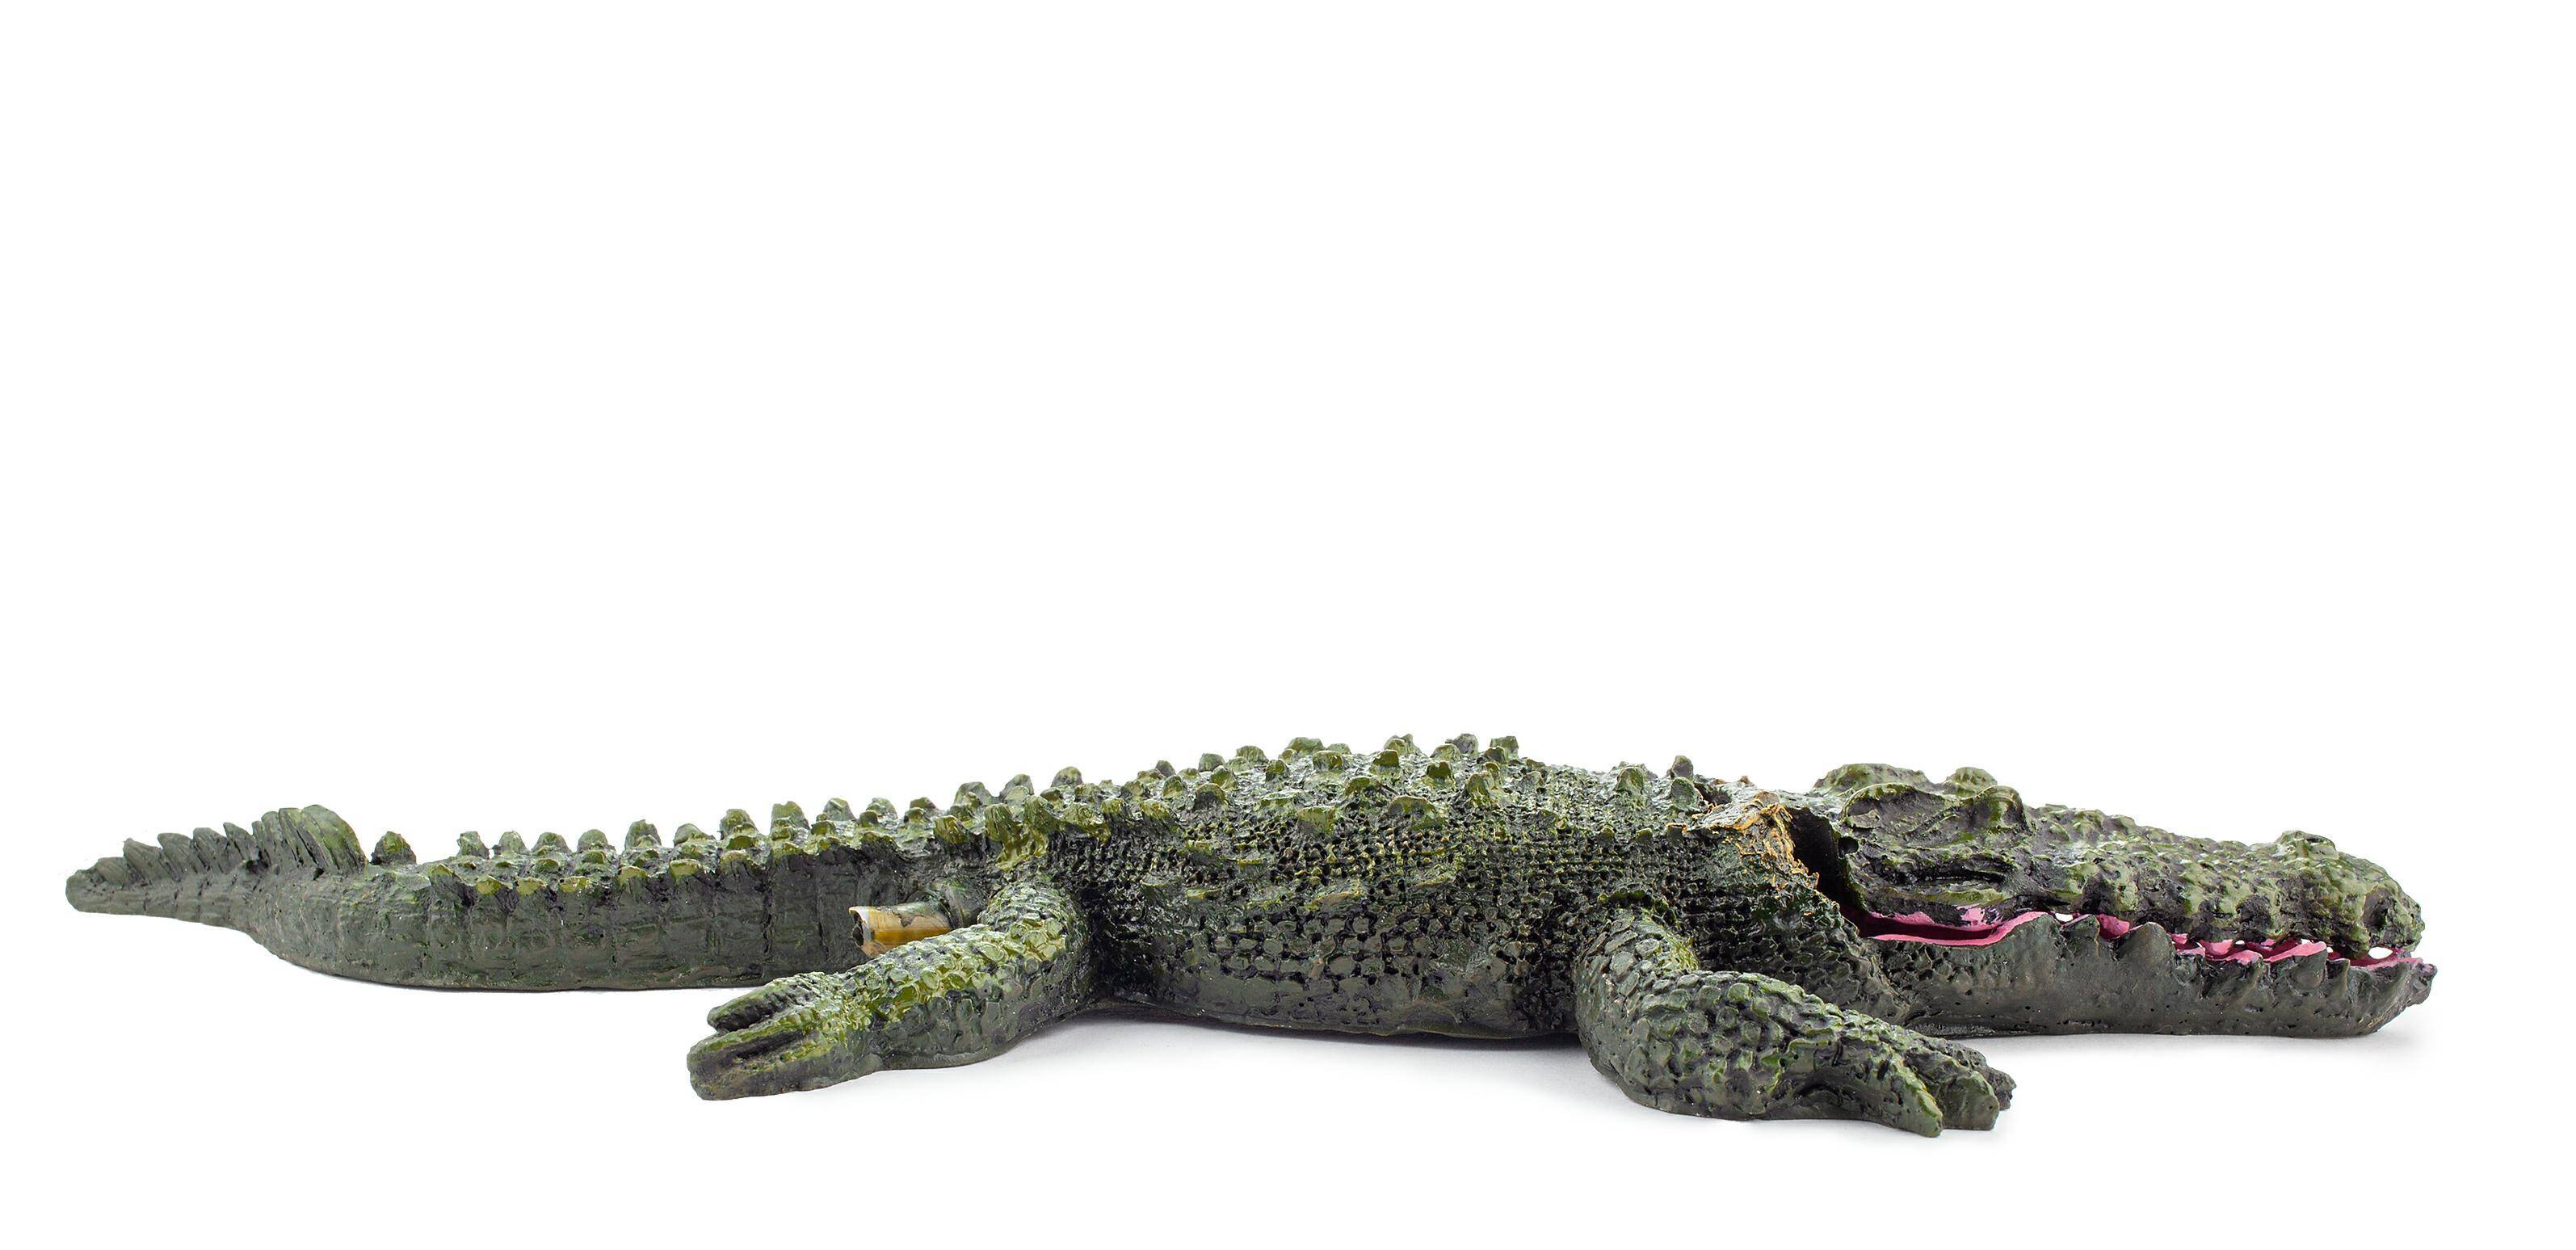 Ozdoba akwariowa Happet U183 krokodyl 17 cm (Zdjęcie 3)